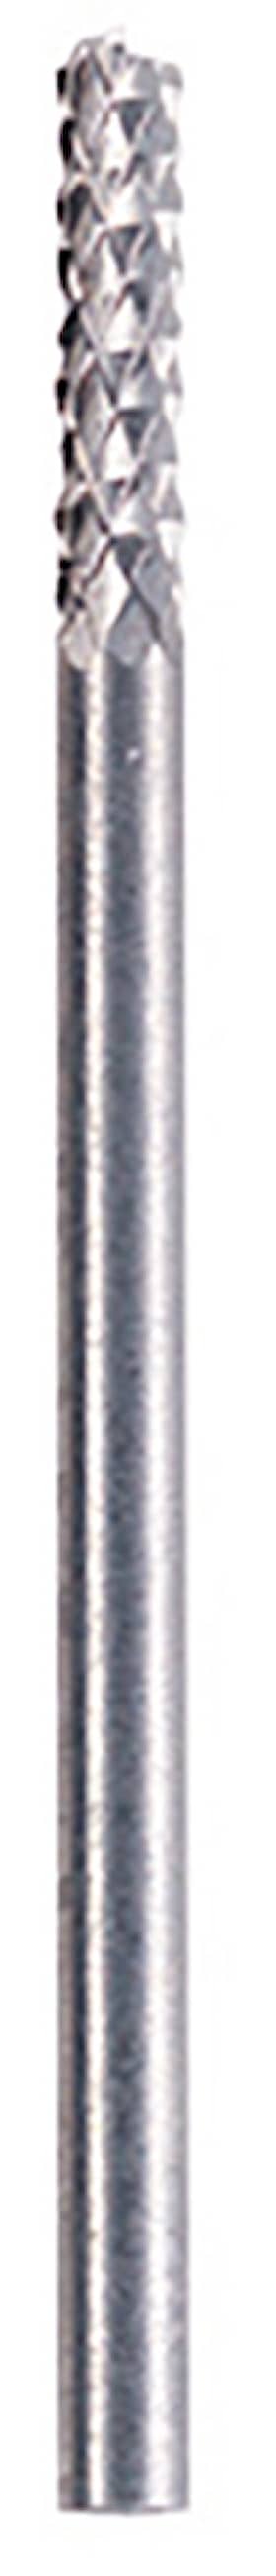 Dremel fugefræsejern 3,2 mm. 570 Fræsejern